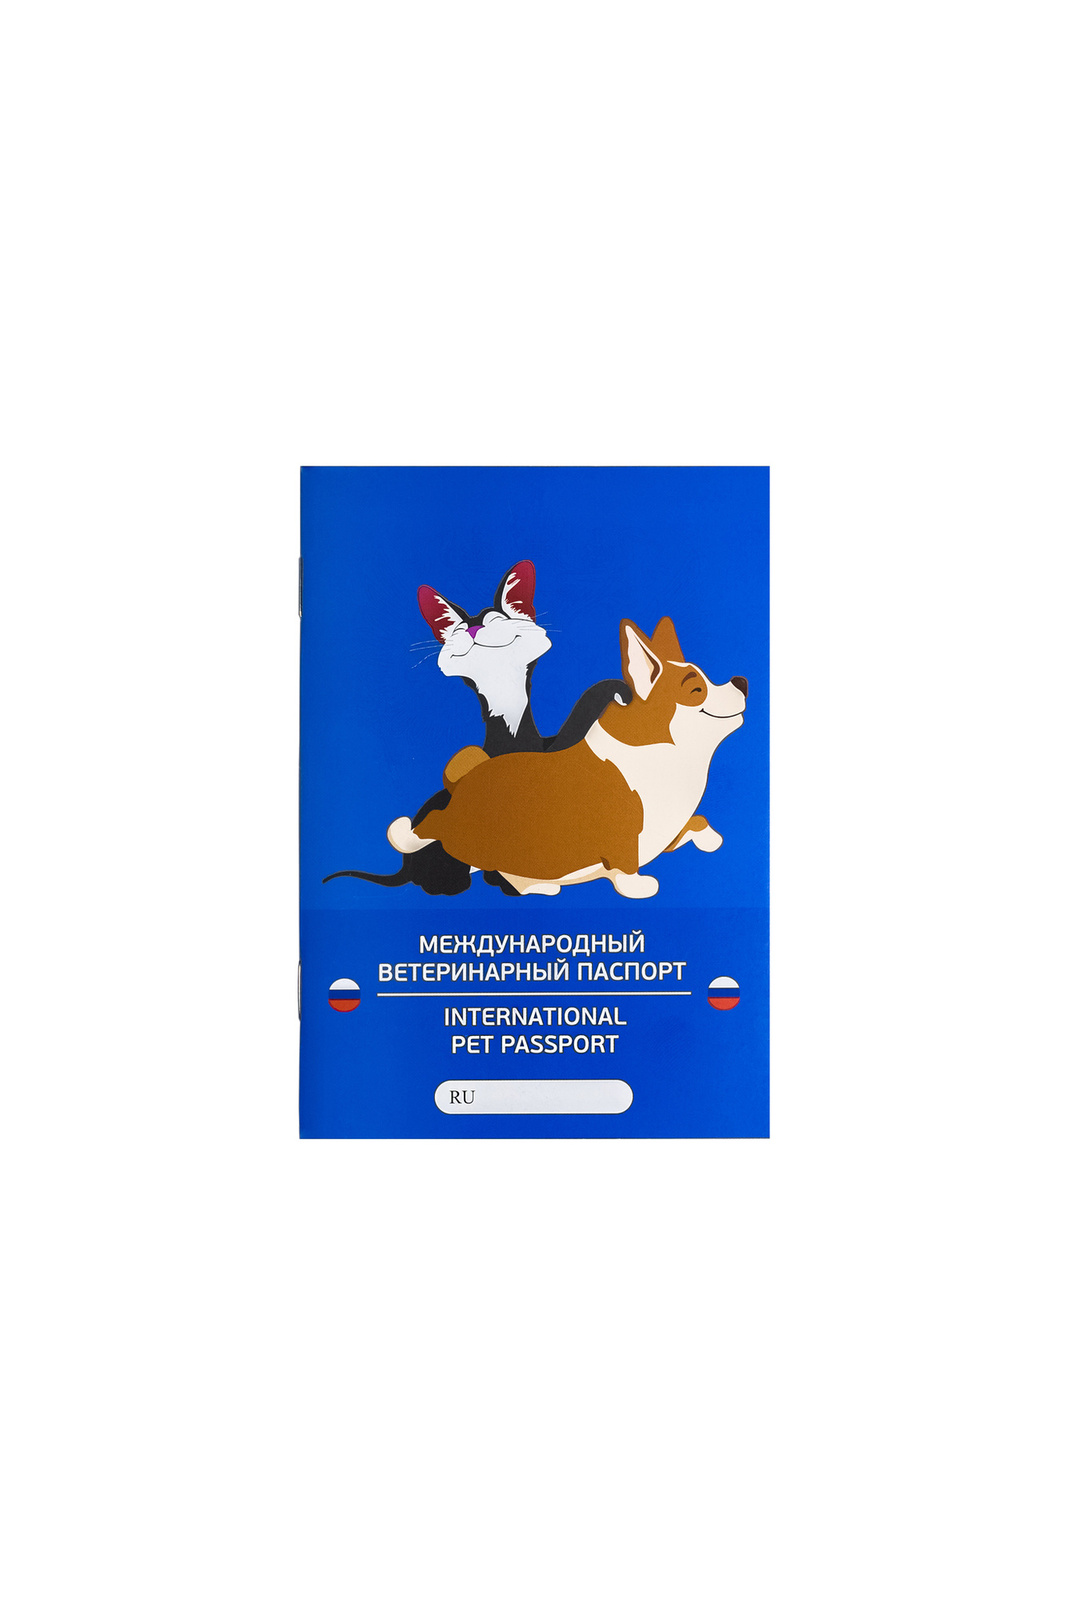 VETЗАБОТА VETЗАБОТА паспорт ветеринарный А6, 28 листов, обложка с ламинацией матовой (10 г) ветеринарный паспорт международный рыжий кот